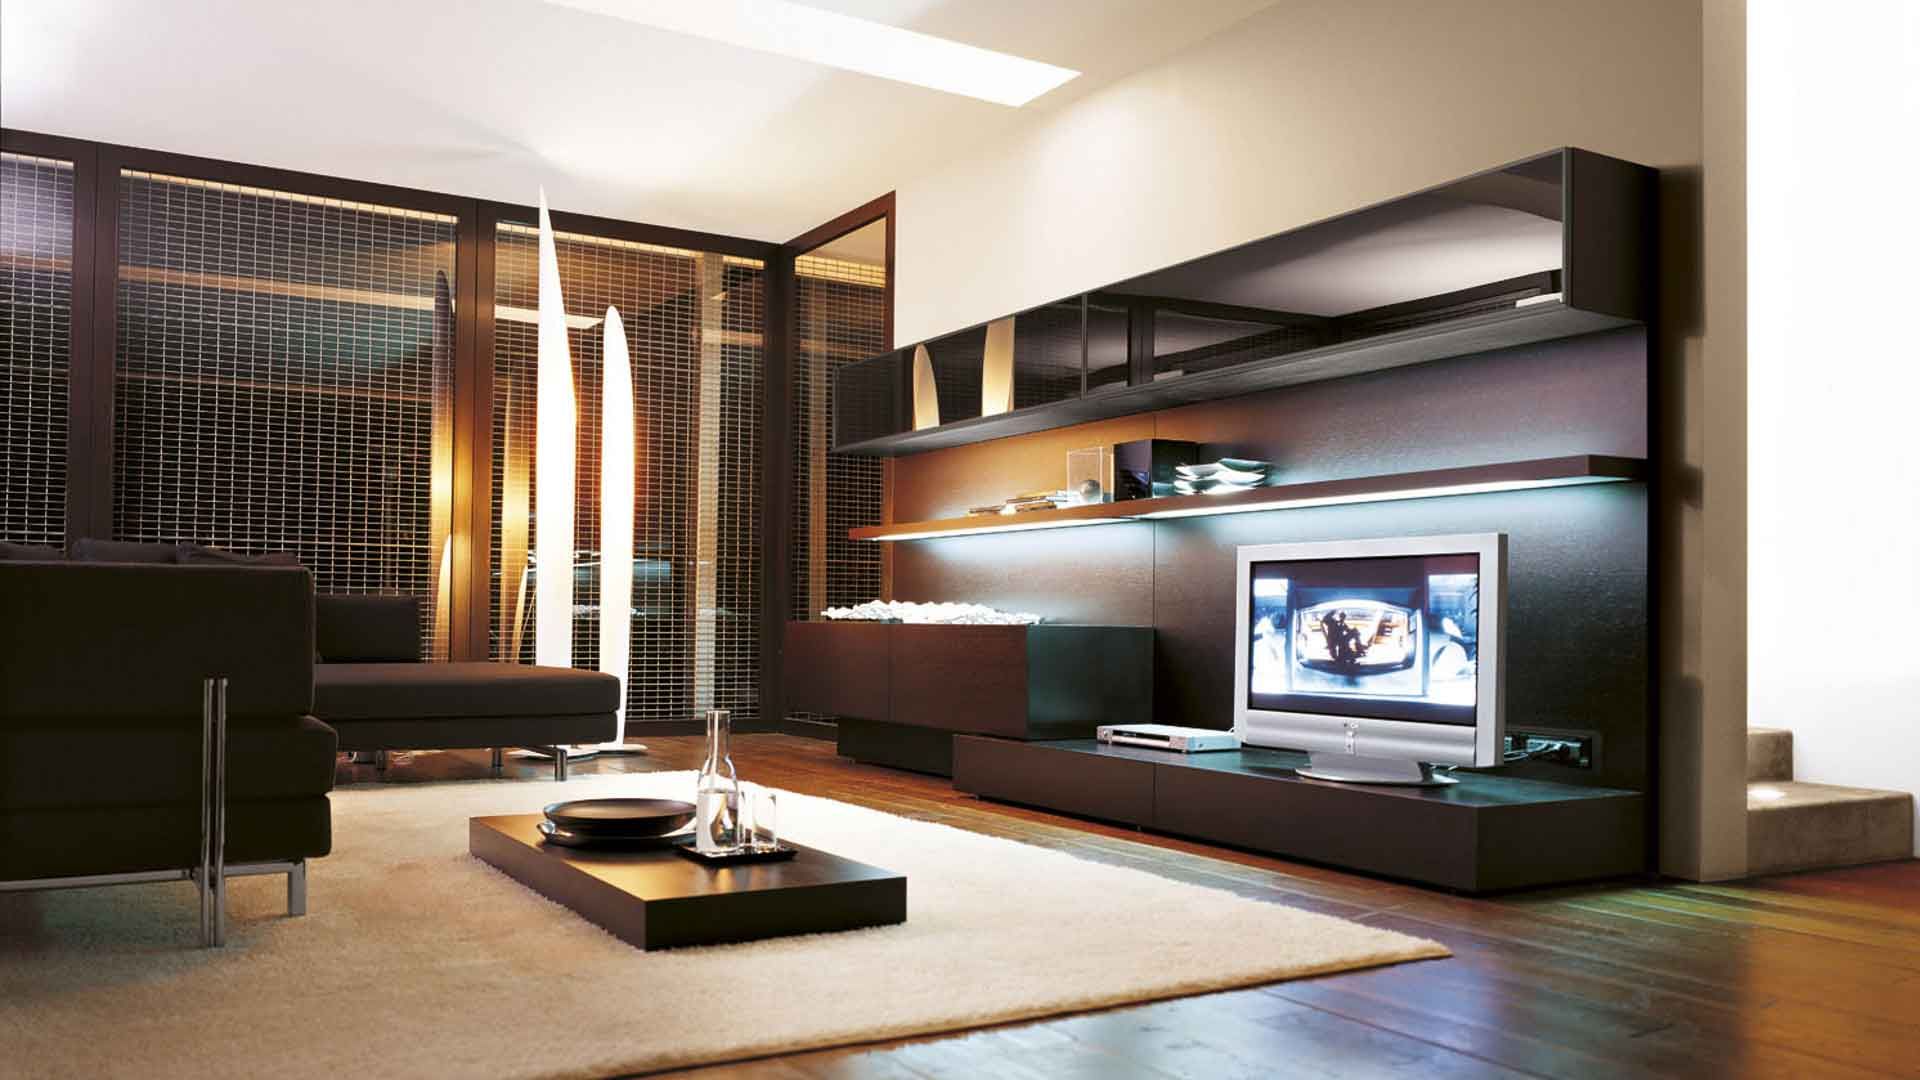 Creazione di un interno di soggiorno utilizzando moderni sistemi modulari